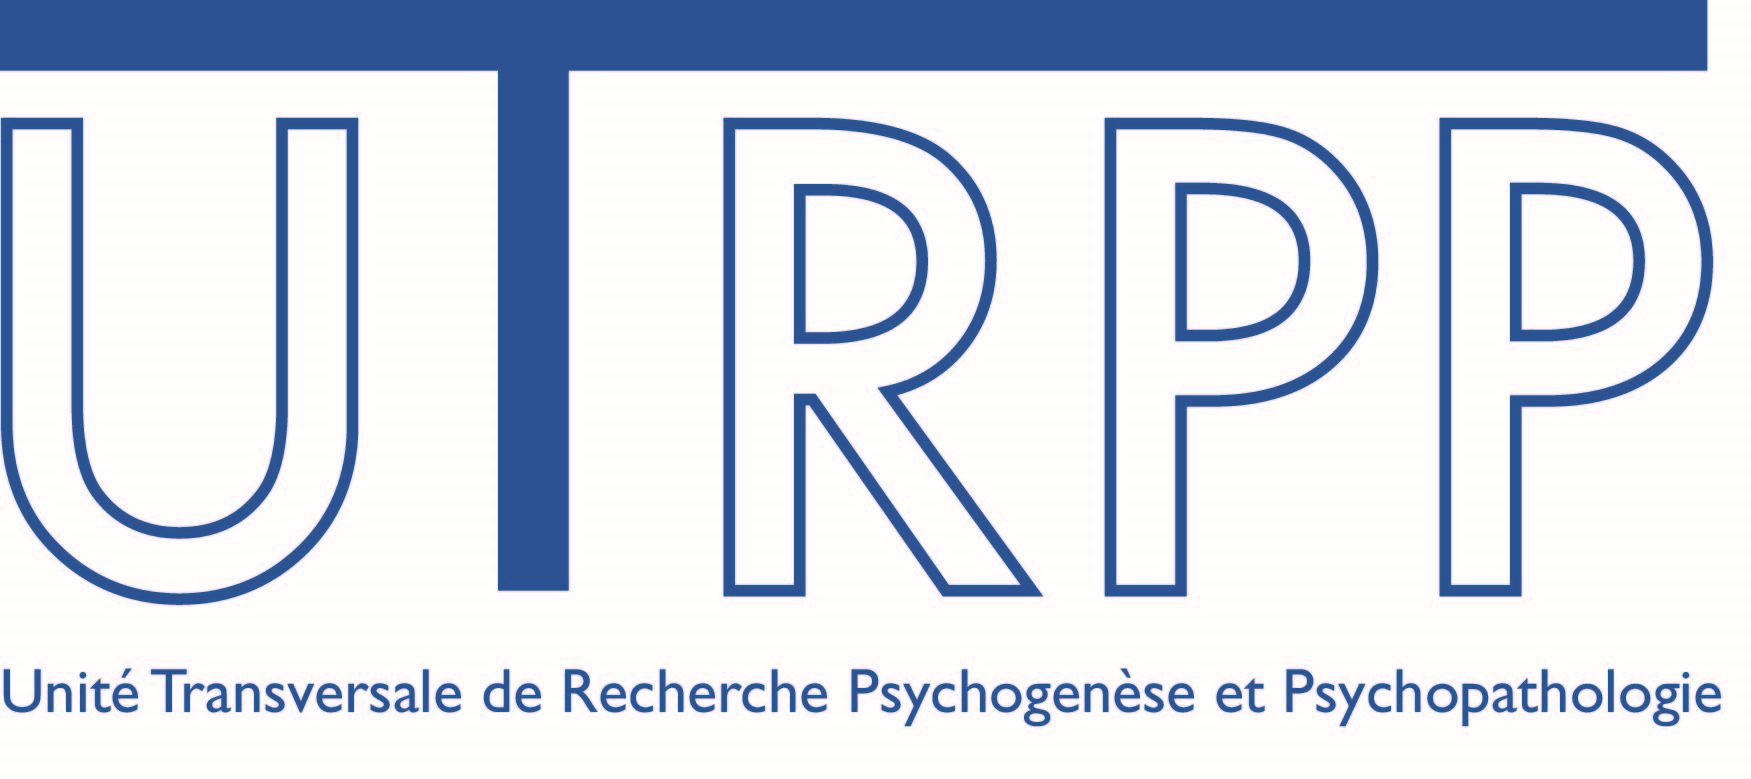 UTRPP - Unité transversale de Recherche Psychogenèse et Psychopathologie